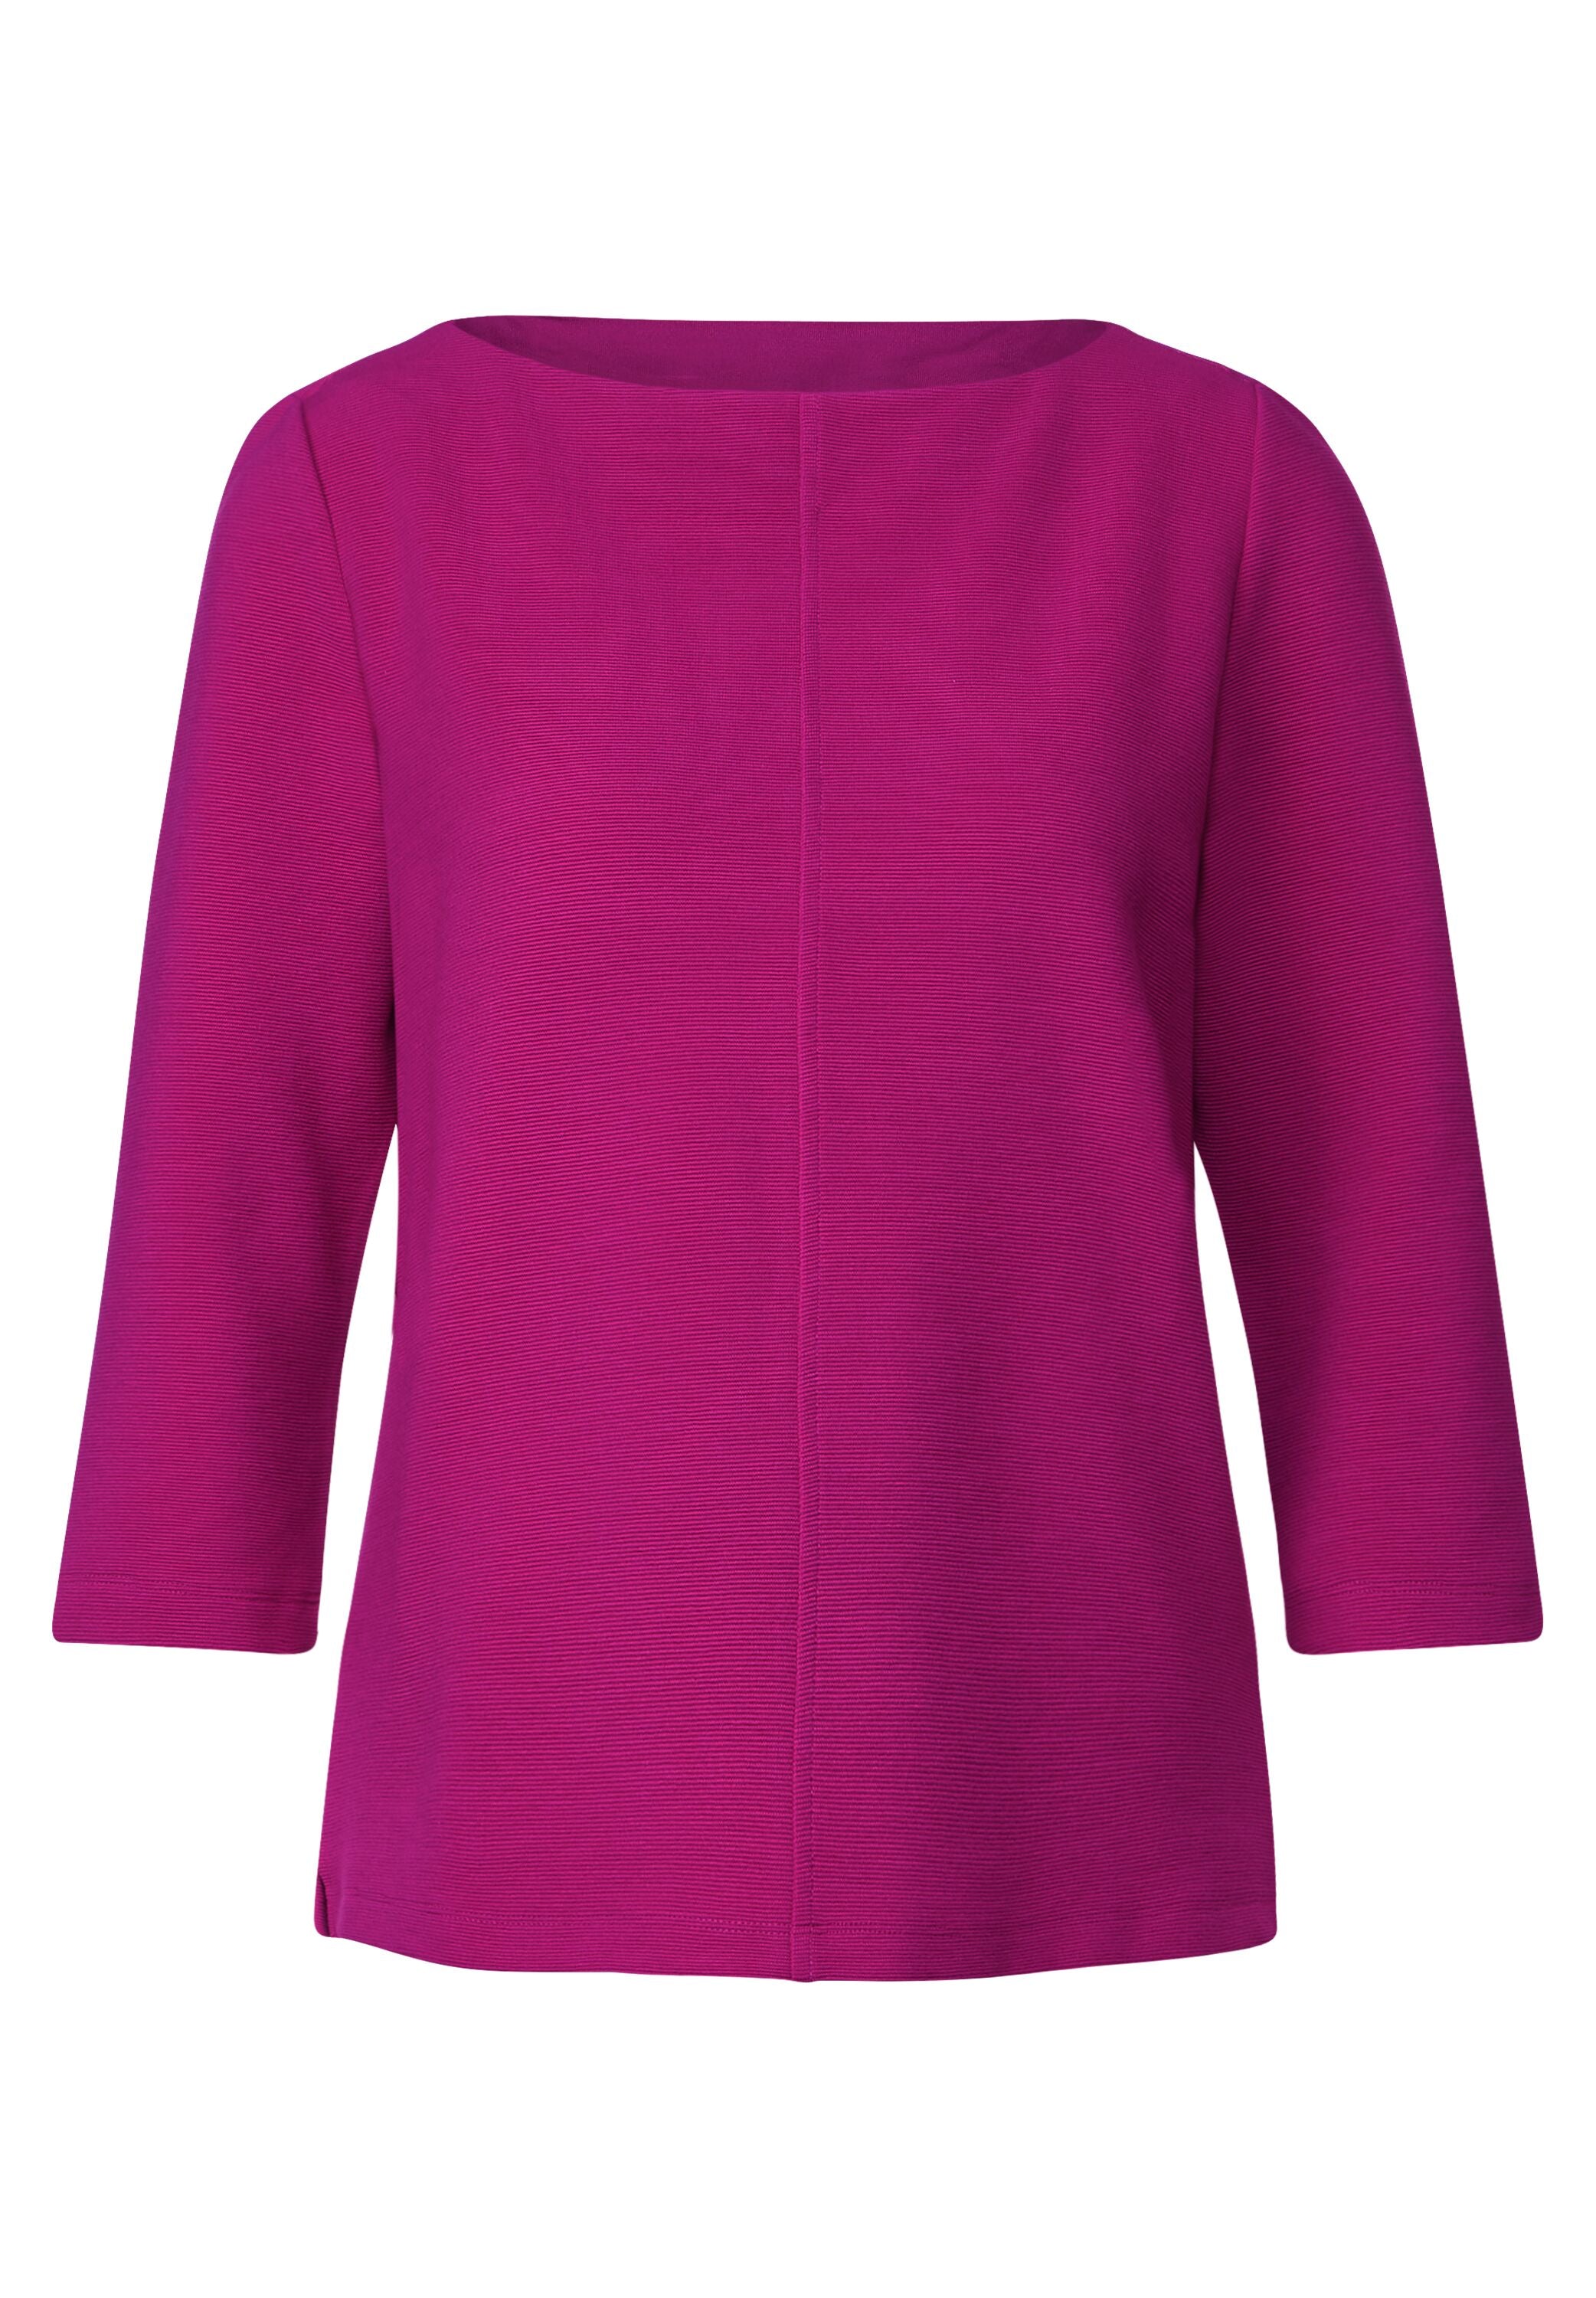 Street One - Shirt mit pink bright – TWISTY cozy Mode - Struktur feiner